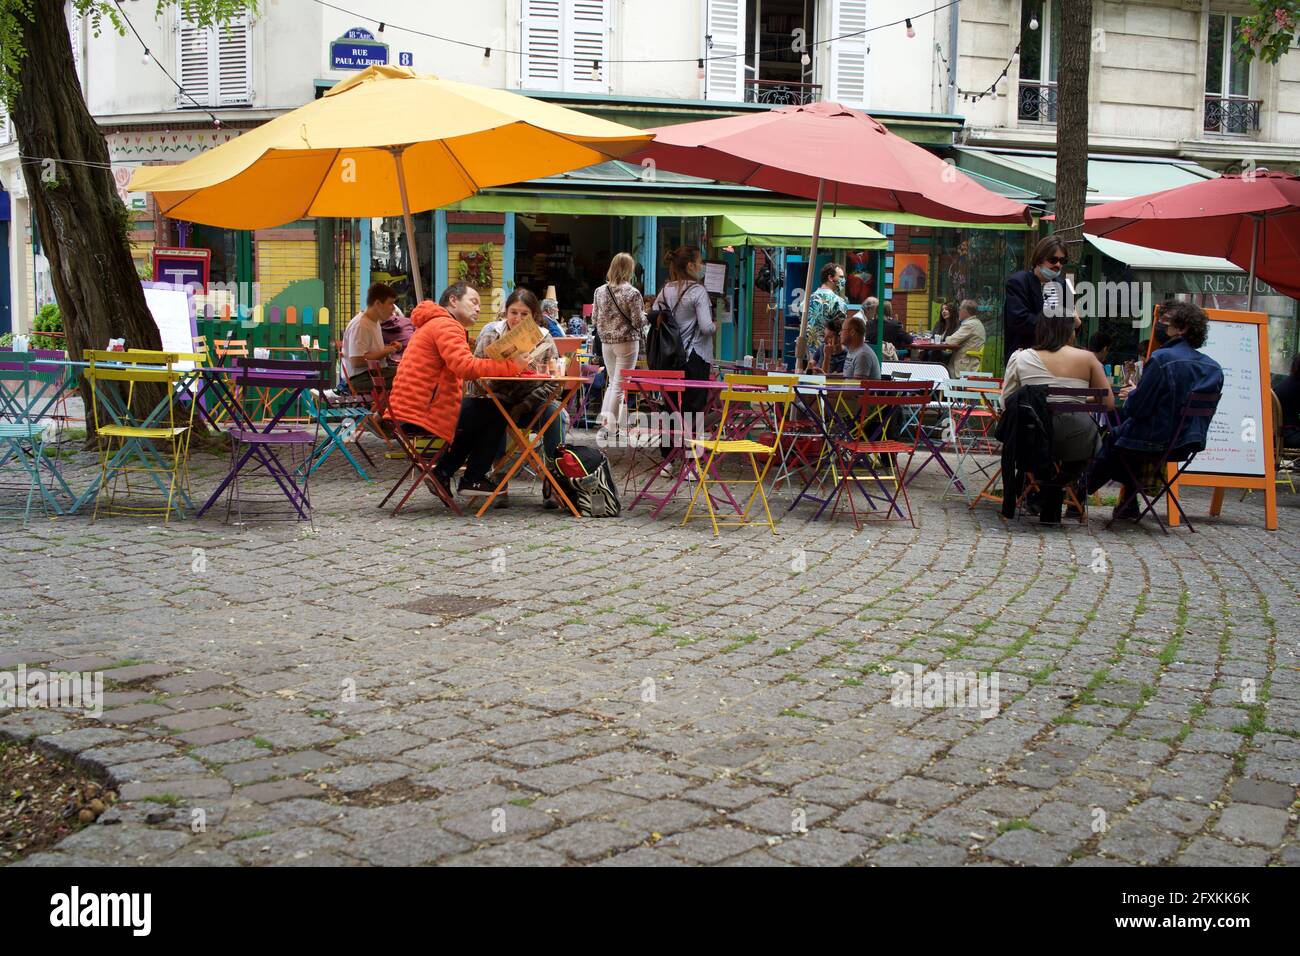 Vous pourrez prendre un verre sur une terrasse de café colorée, l'une des nombreuses terrasses désormais ouvertes au public après que les restrictions de verrouillage de Covid-19 ont été assouplies - l'été en pente douce, 8 rue Paul Albert, 75018, Paris, France. Mai 2021. Banque D'Images